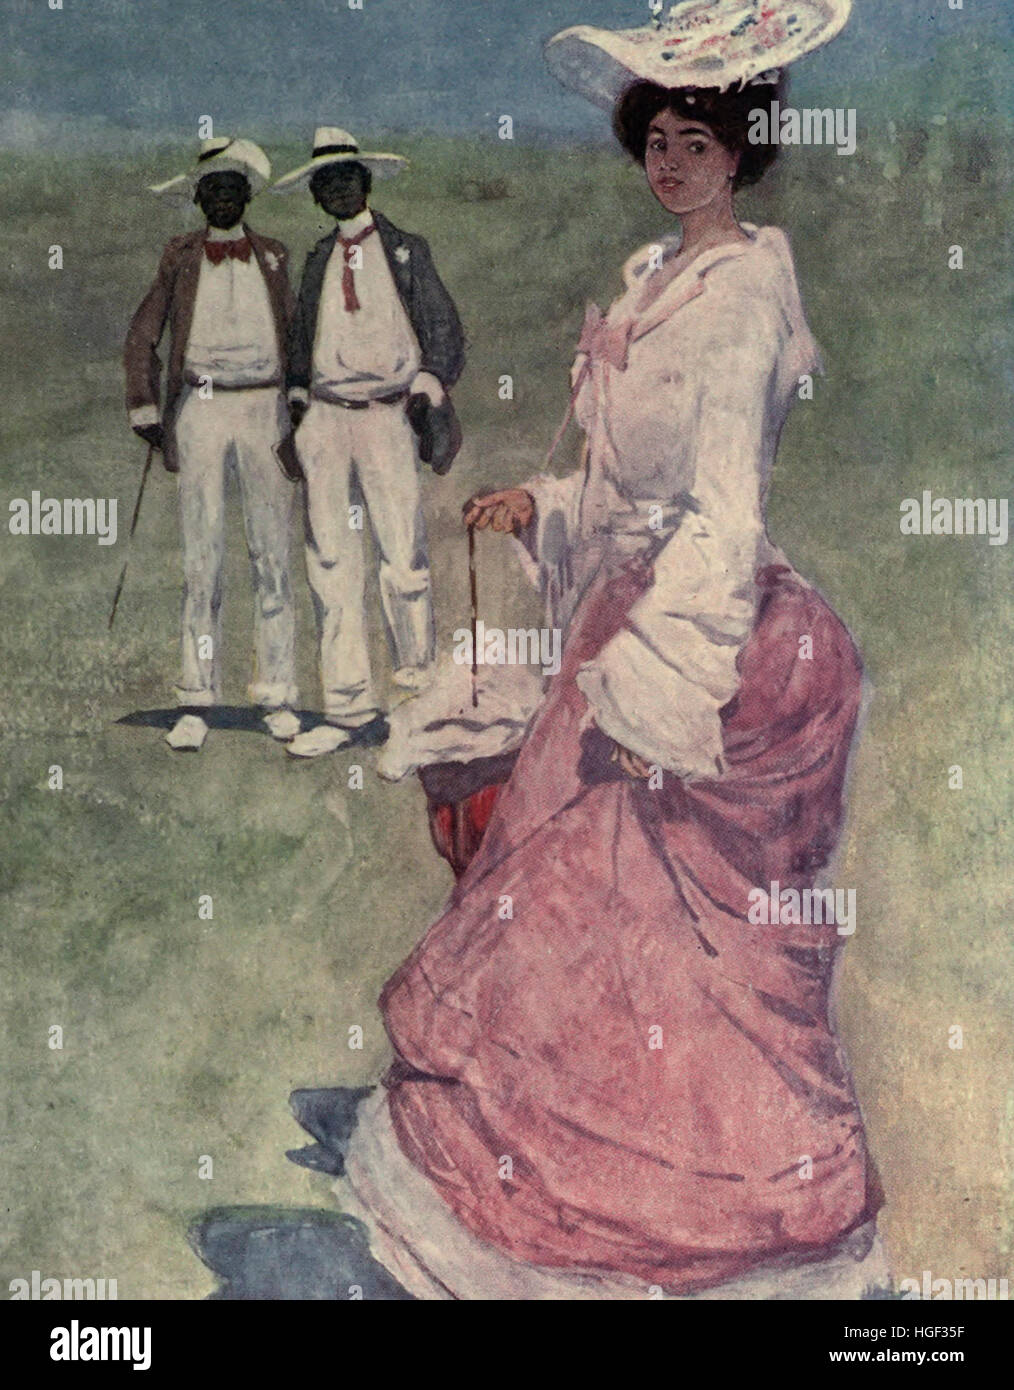 Eine farbige Dame auf einer Rennstrecke. Jamaika, um 1900 Stockfoto